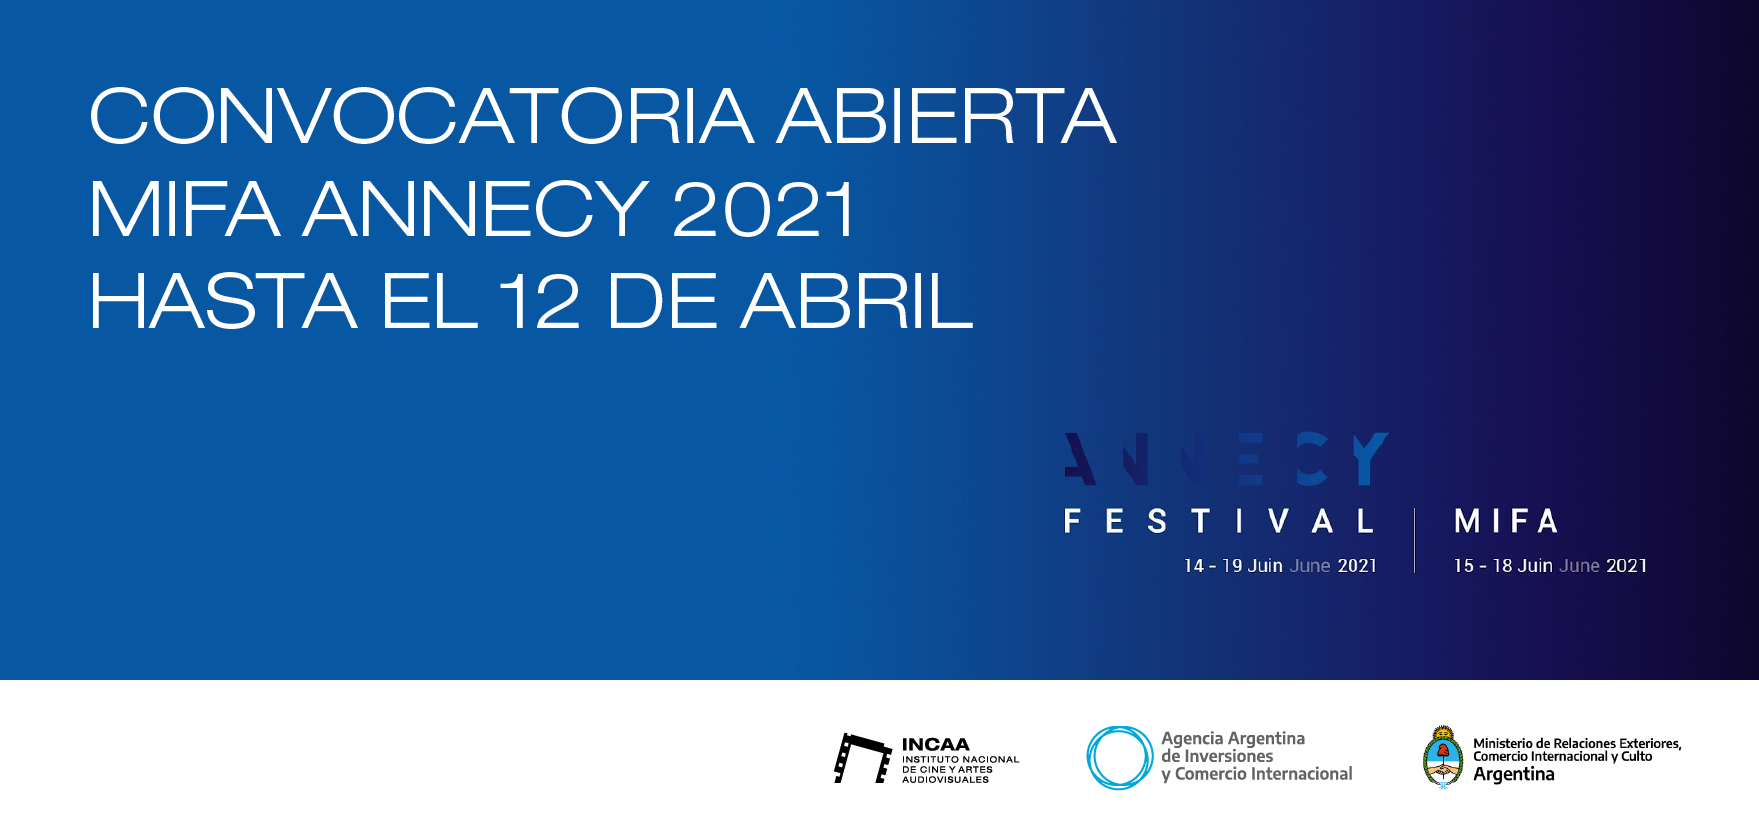 CONVOCATORIA ABIERTA - MIFA ANNECY 2021 HASTA EL 12 DE ABRIL